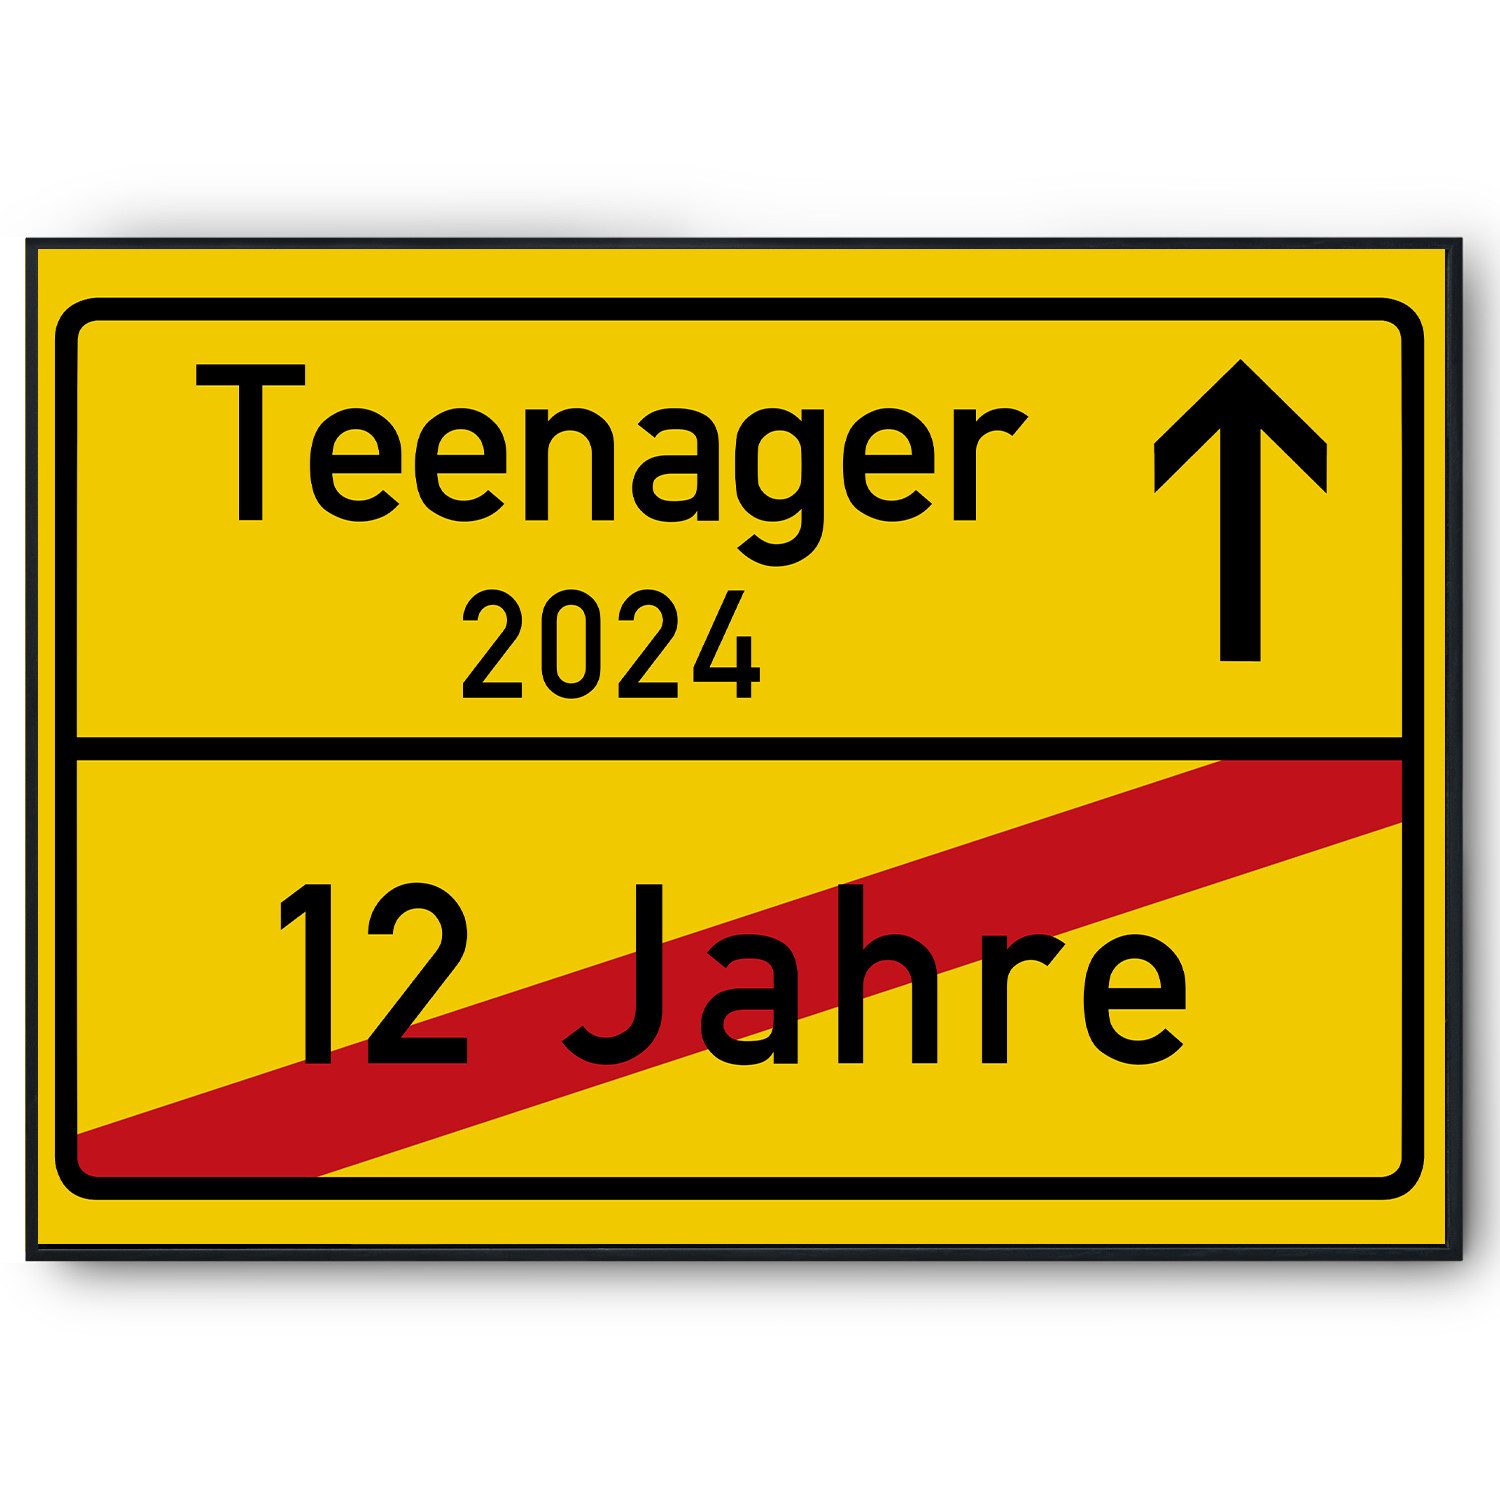 Tigerlino Poster Ortsschild Teenager Geschenkidee zum 13. Geburtstag Jugendlicher, Ortsschild aus Kartonpapier (kein Metall)